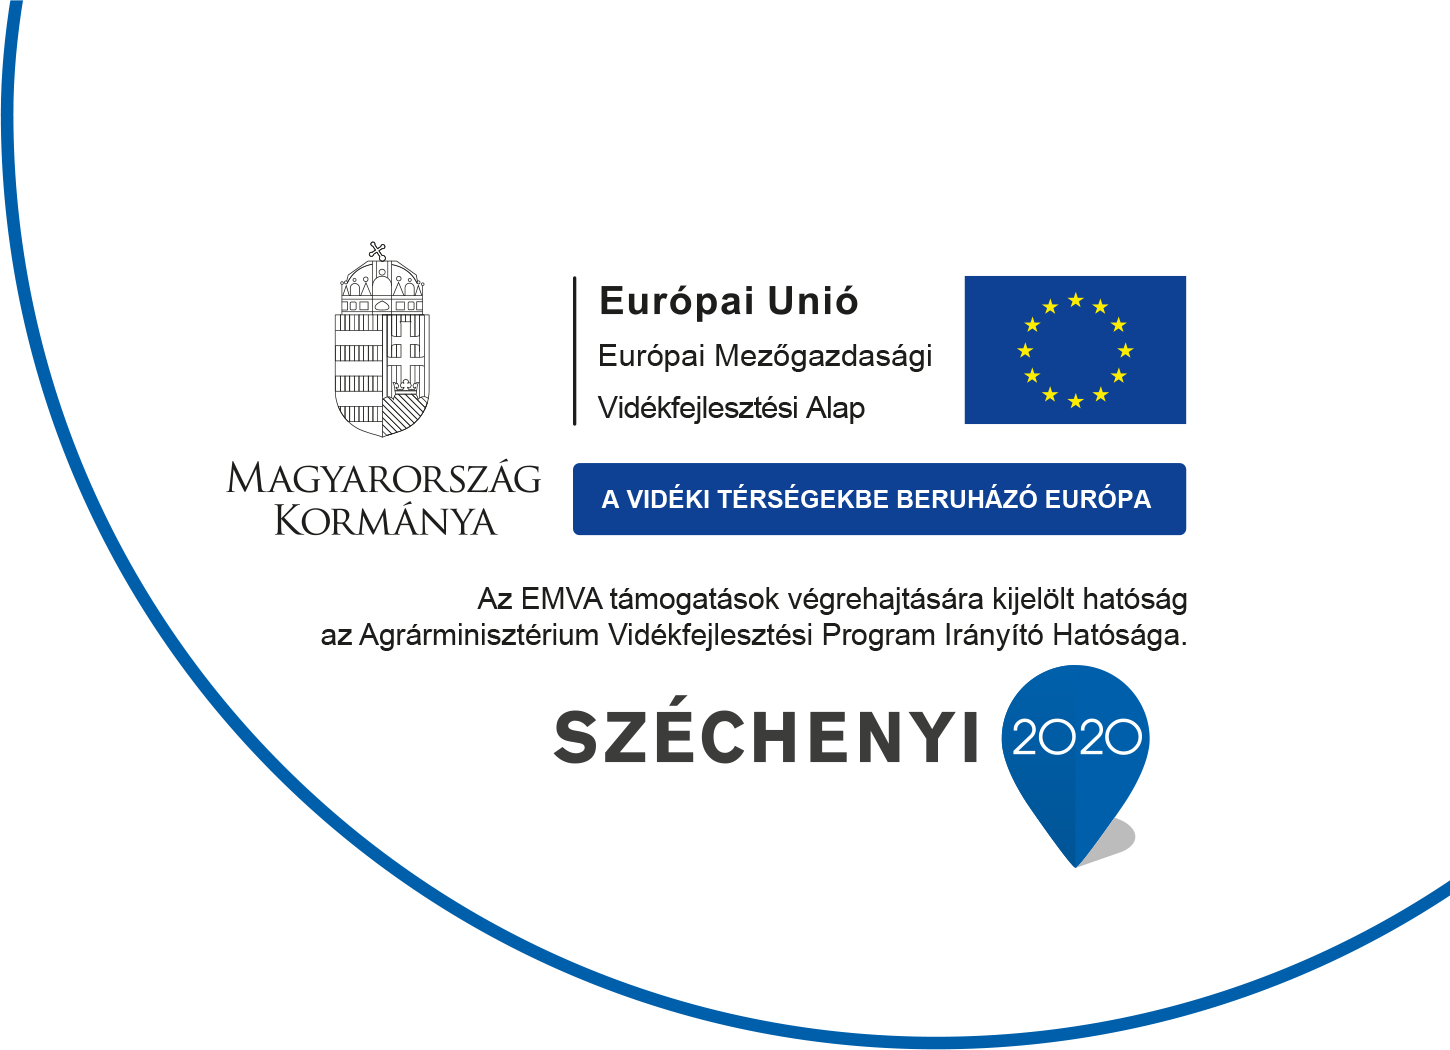 Széchenyi 2020 - Európai Unió - Magyarország kormánya